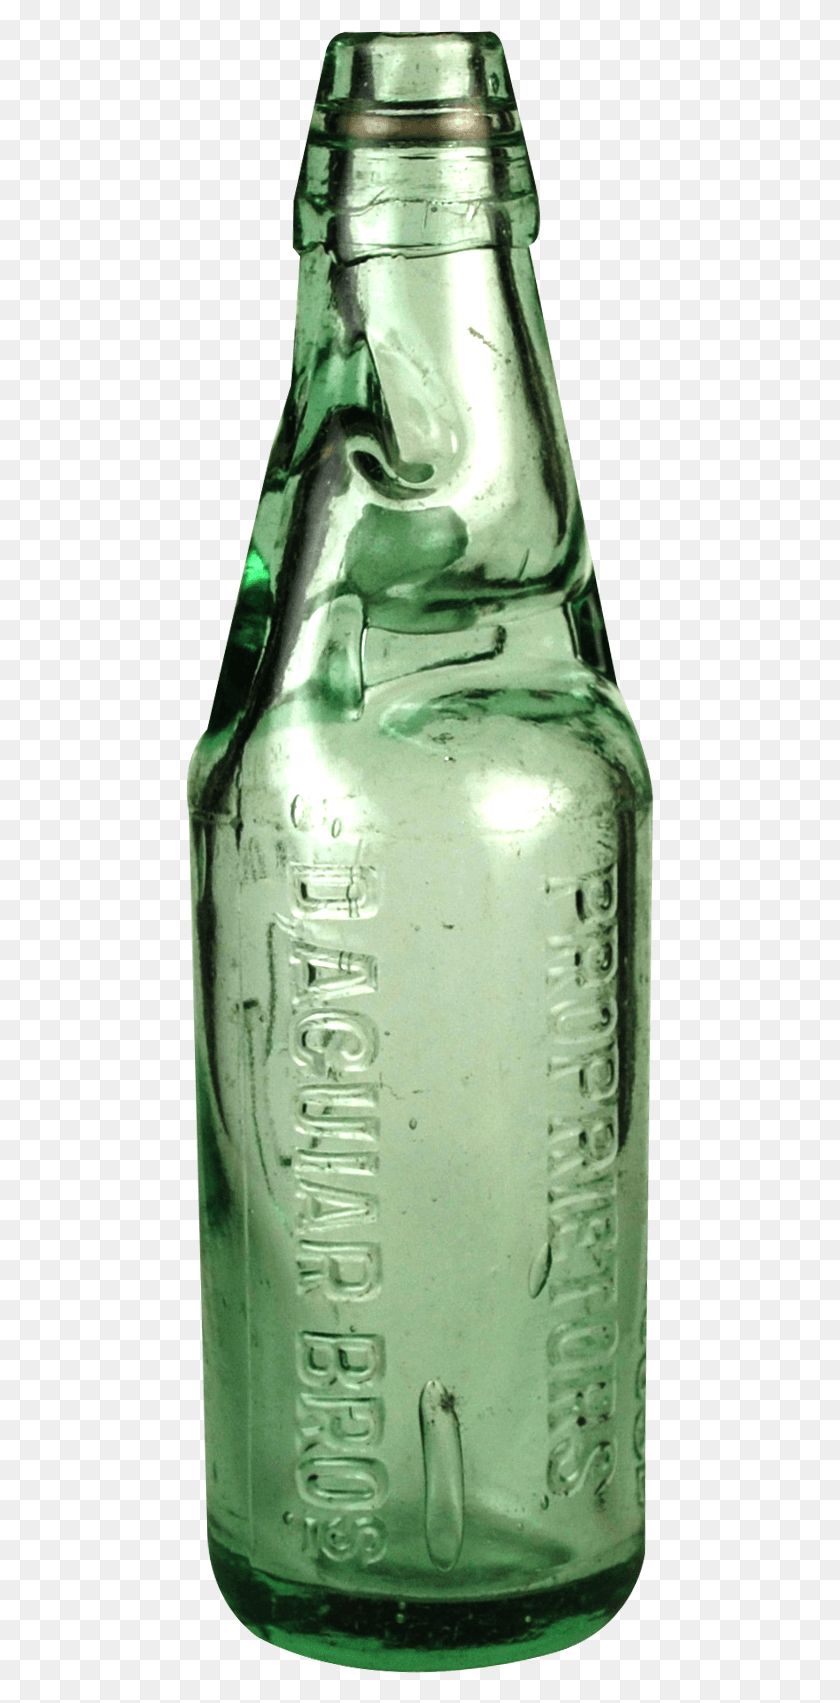 469x1643 Codd Bottle Transparent Image Soda Glass Bottle, Beverage, Drink, Alcohol HD PNG Download